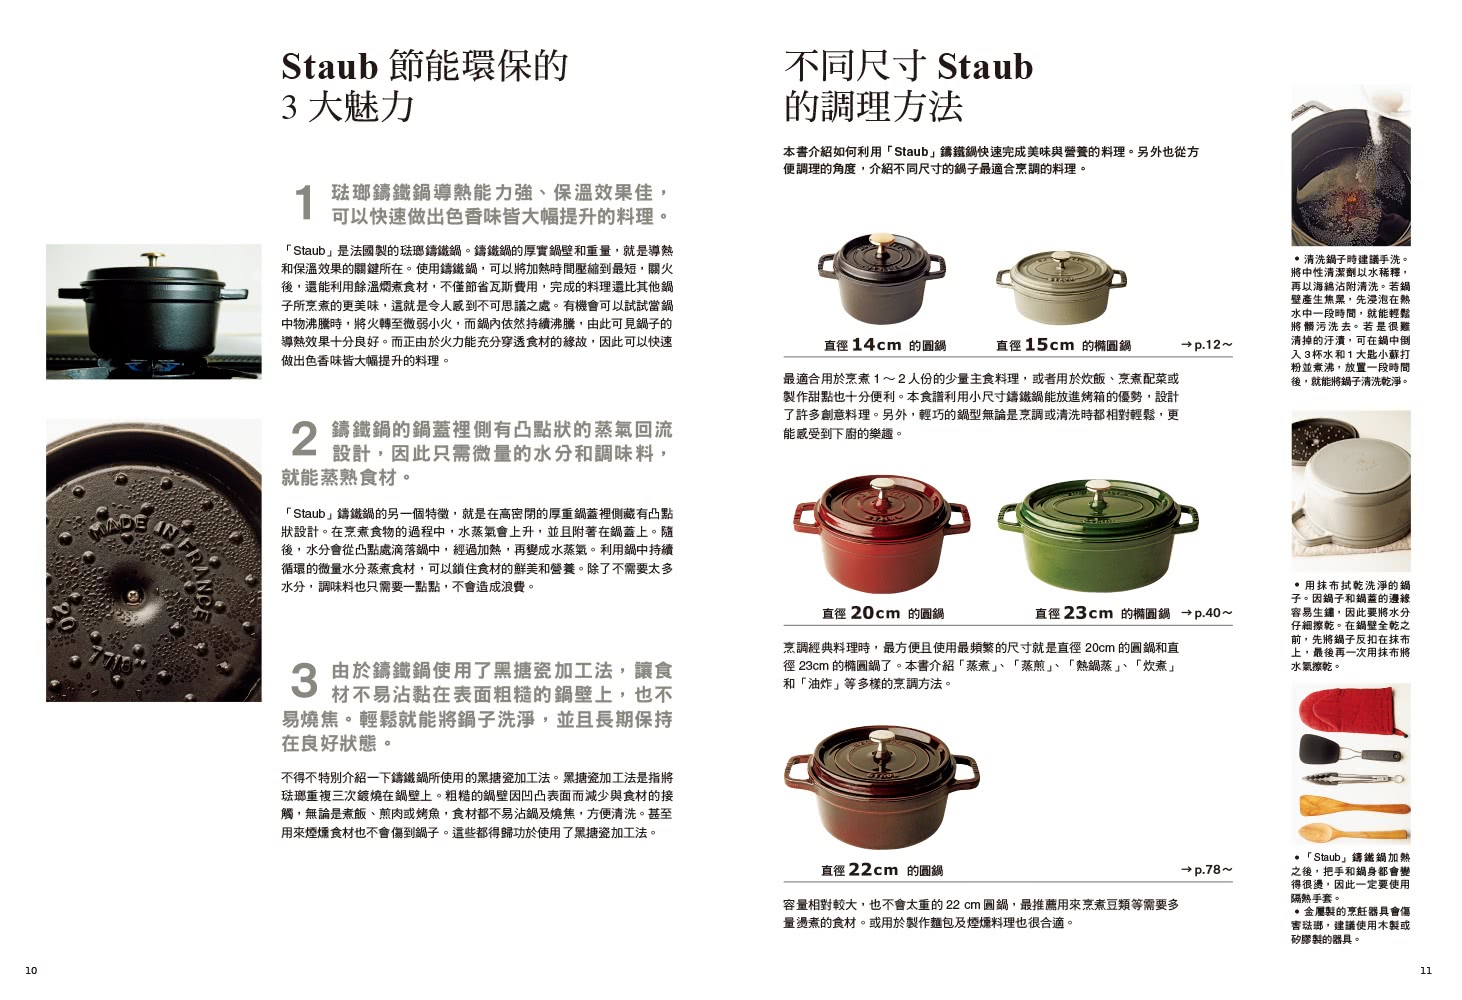 愛上鑄鐵鍋：活用中小型STAUB鍋 在家烹調更輕鬆 79道蒸煮、油炸、煙燻、甜點料理天天上桌